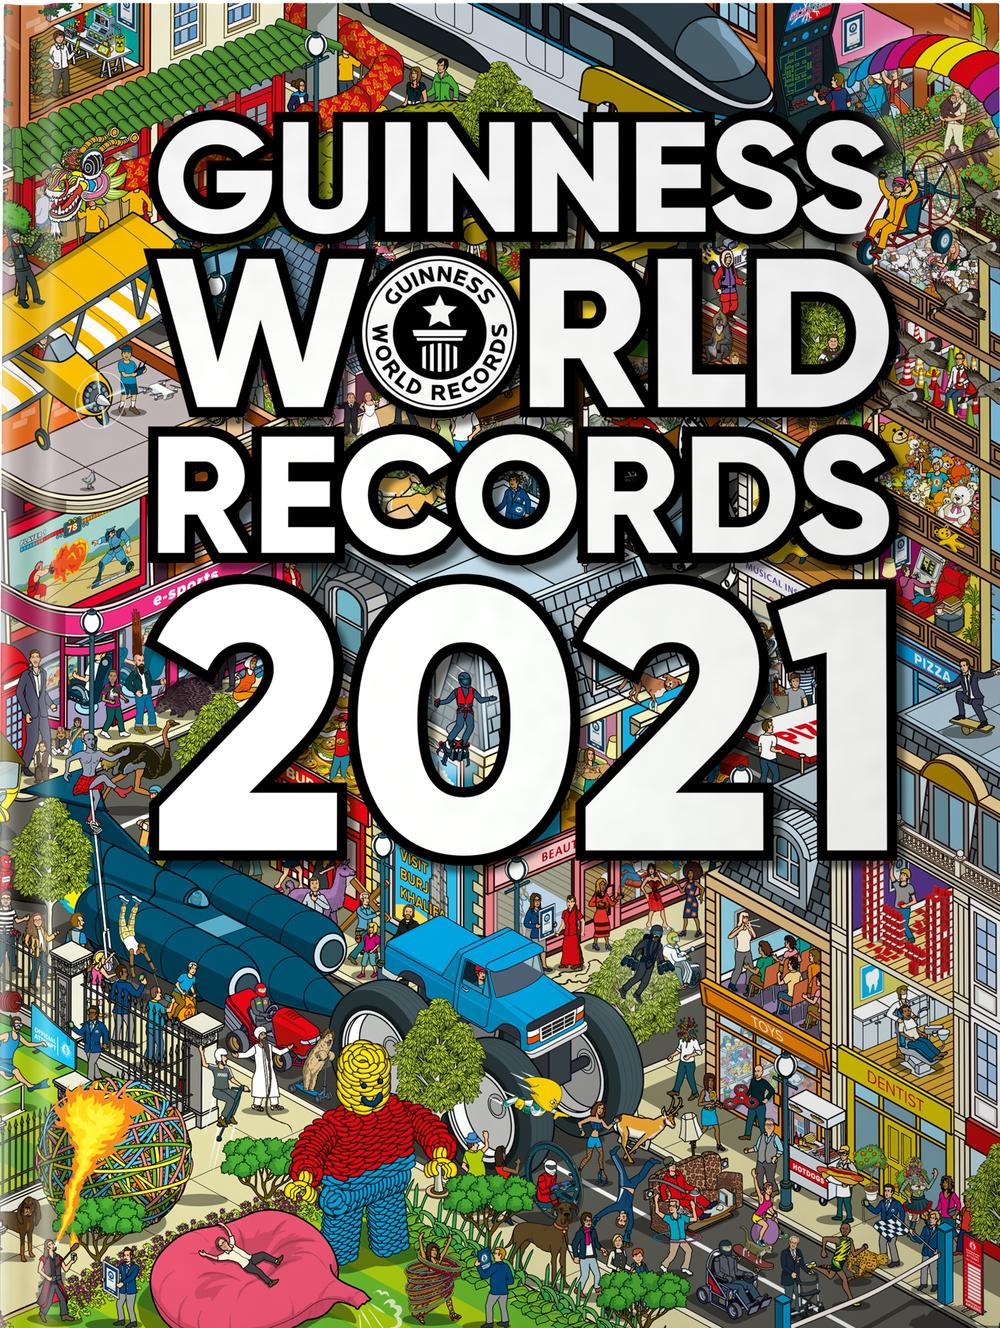 Guinness Book